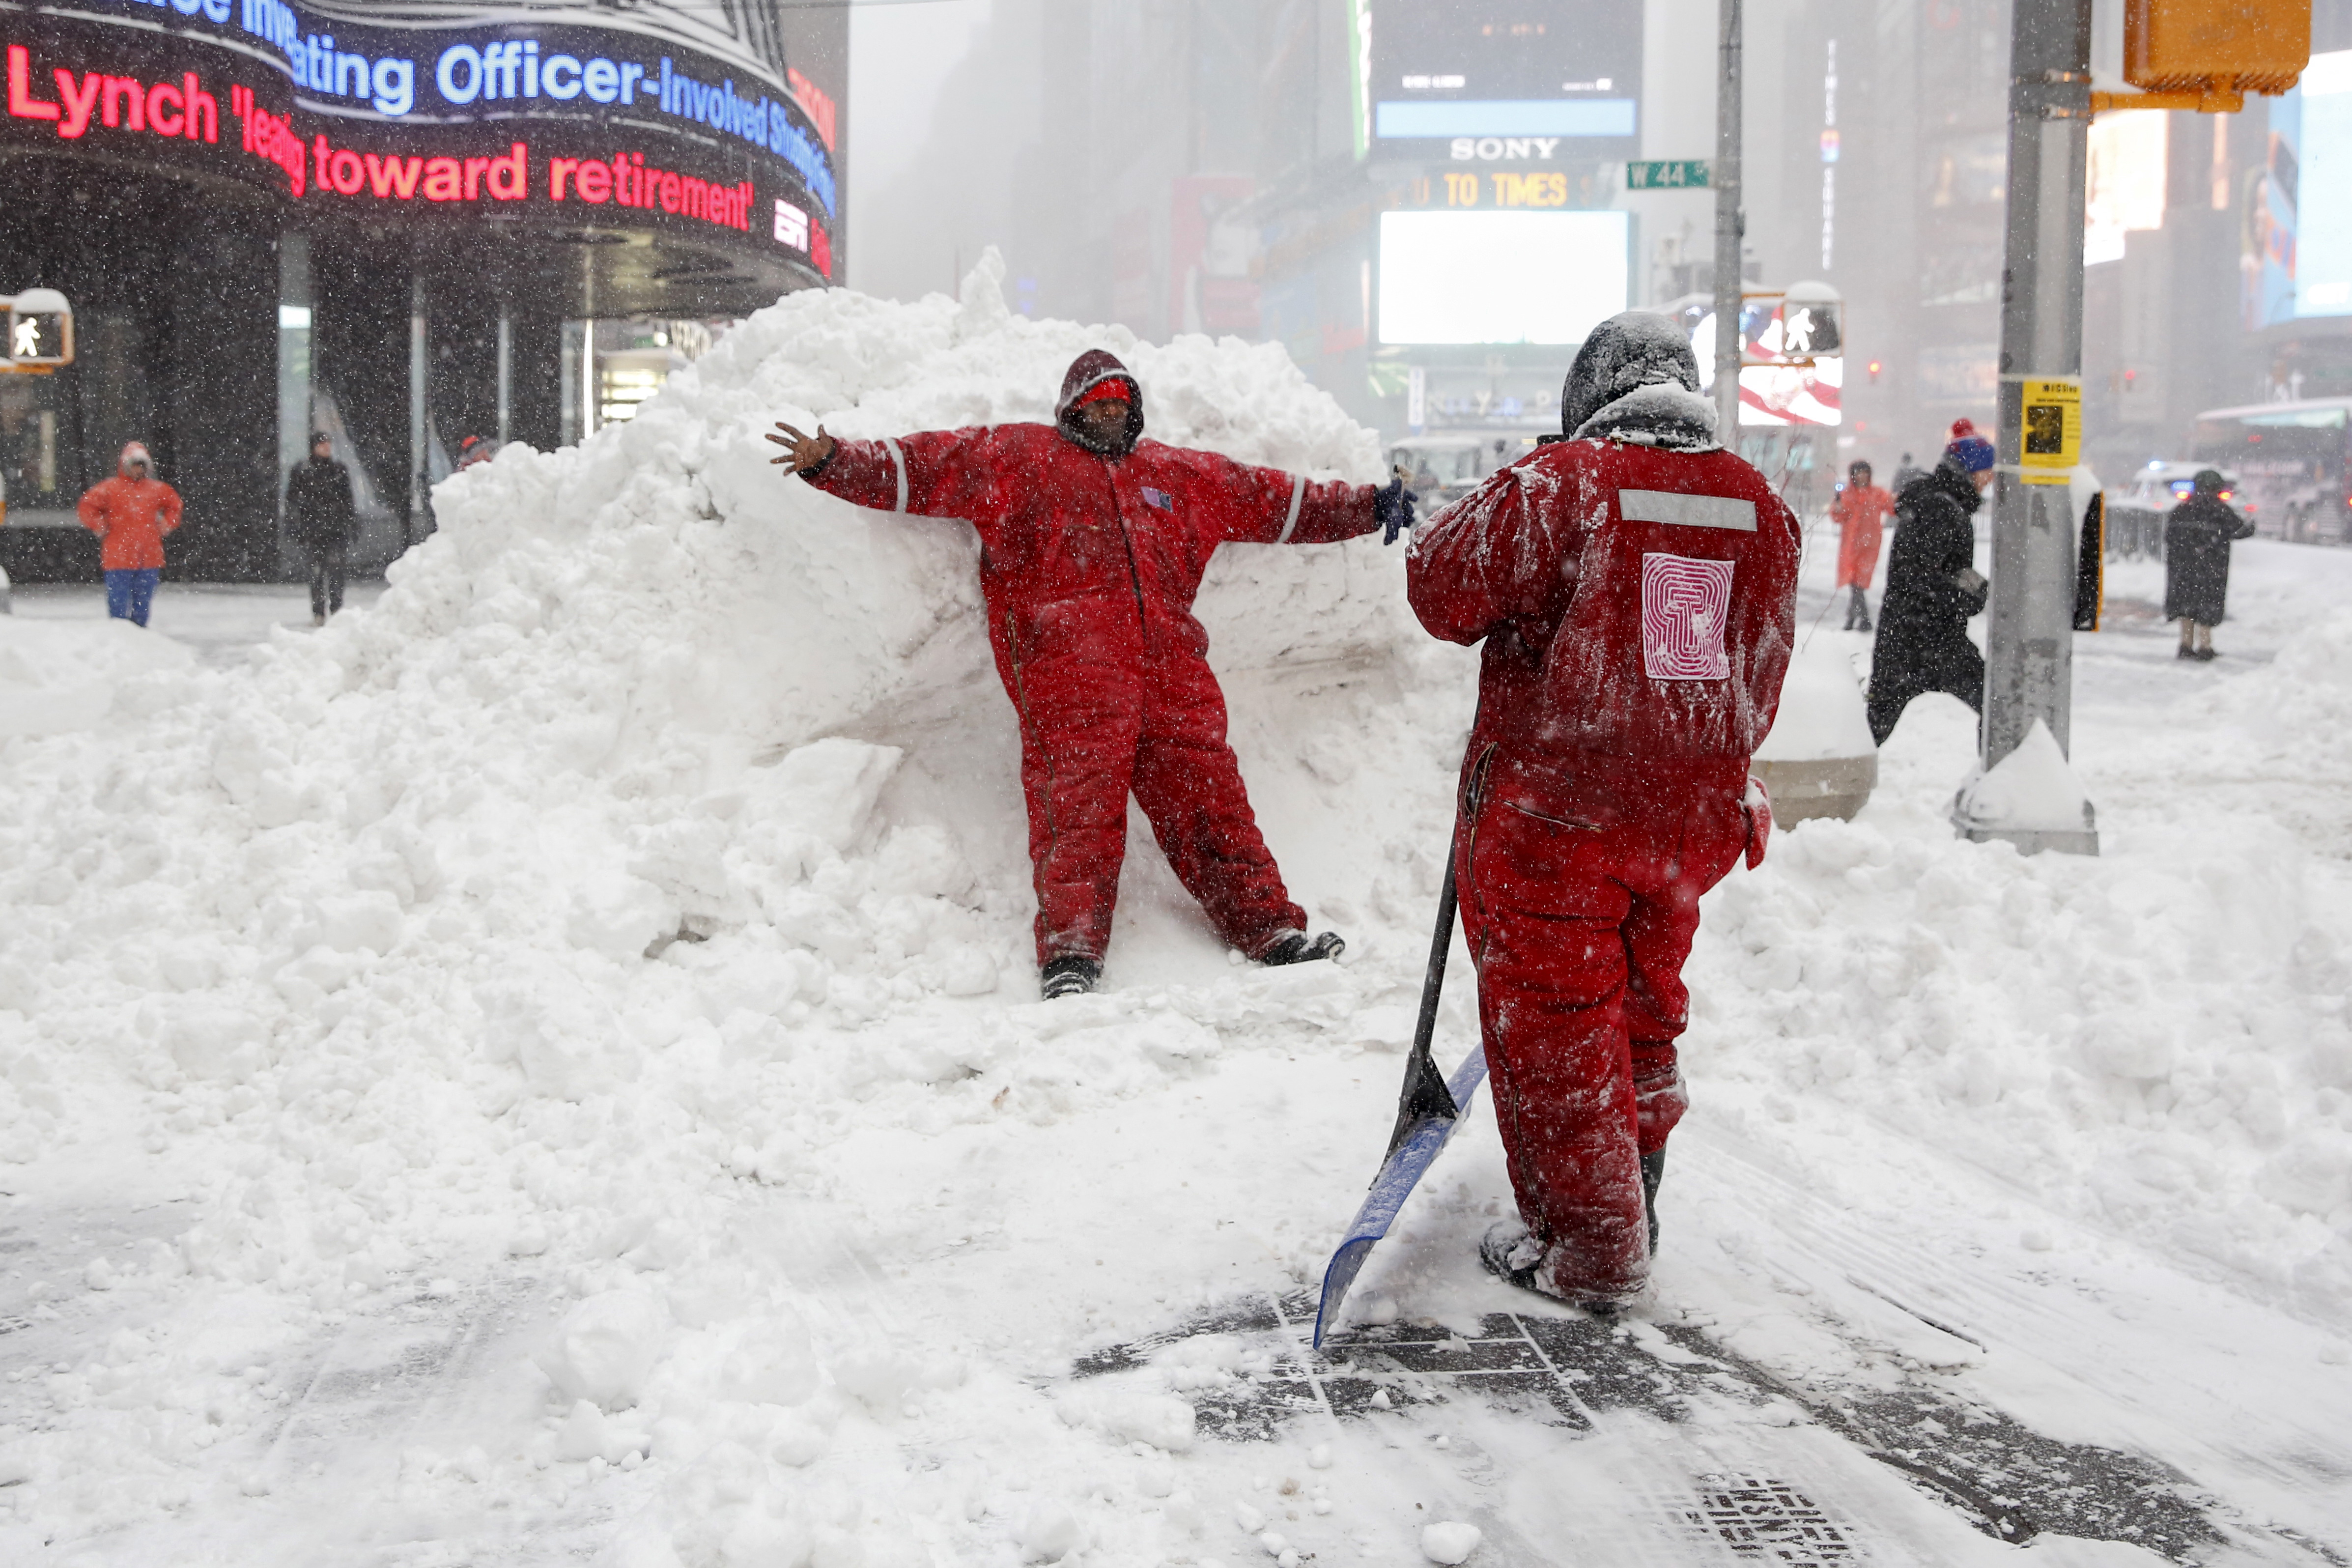 Члены снегоуборочной команды на&nbsp;​площади&nbsp;Таймс-сквер в Нью-Йорке